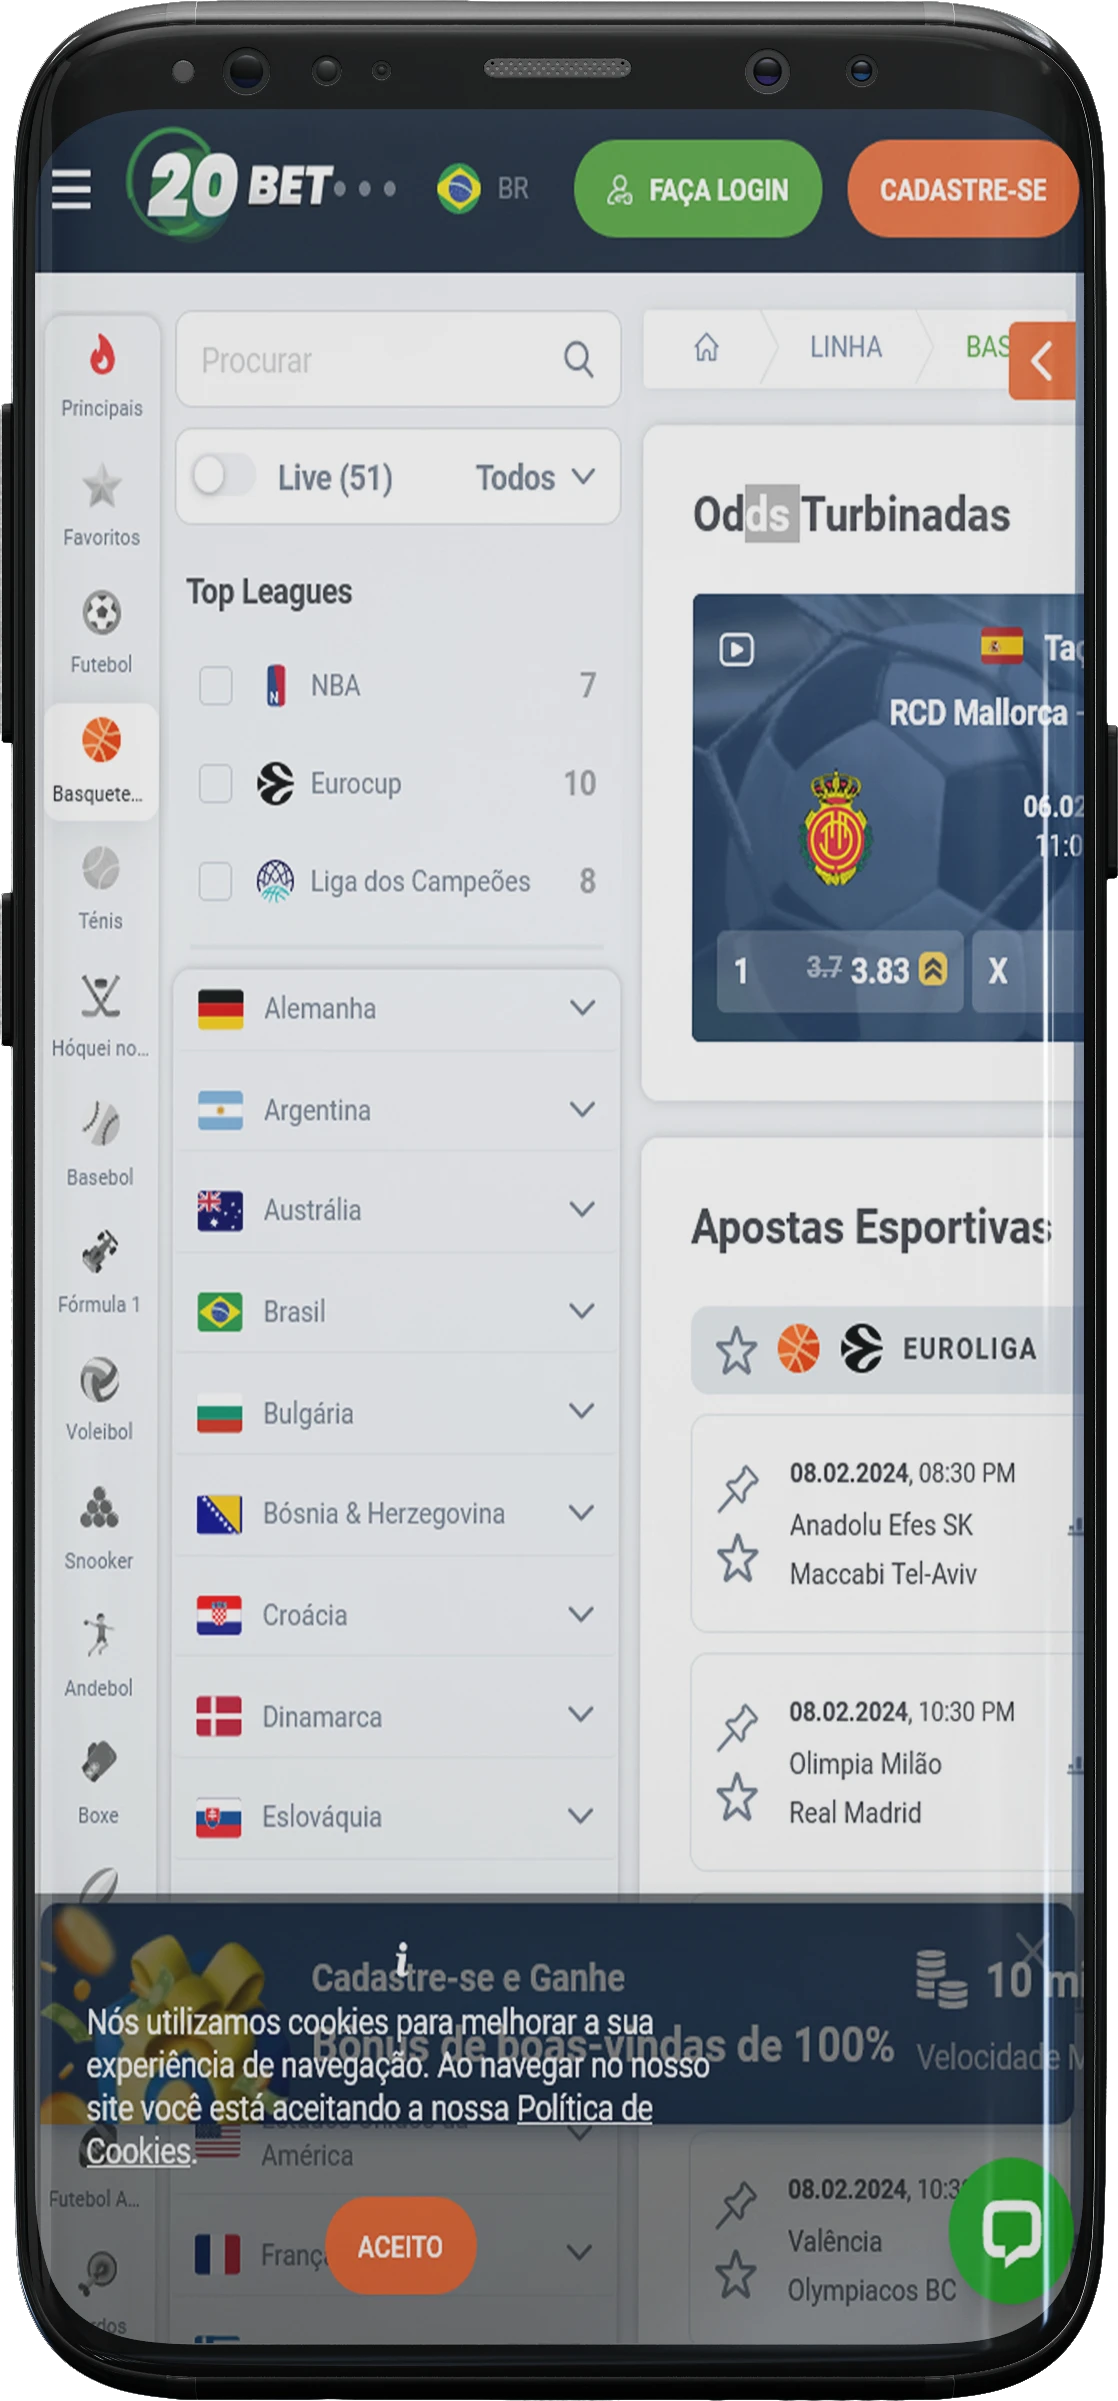 Captura de tela da seção de basquete do aplicativo 20bet